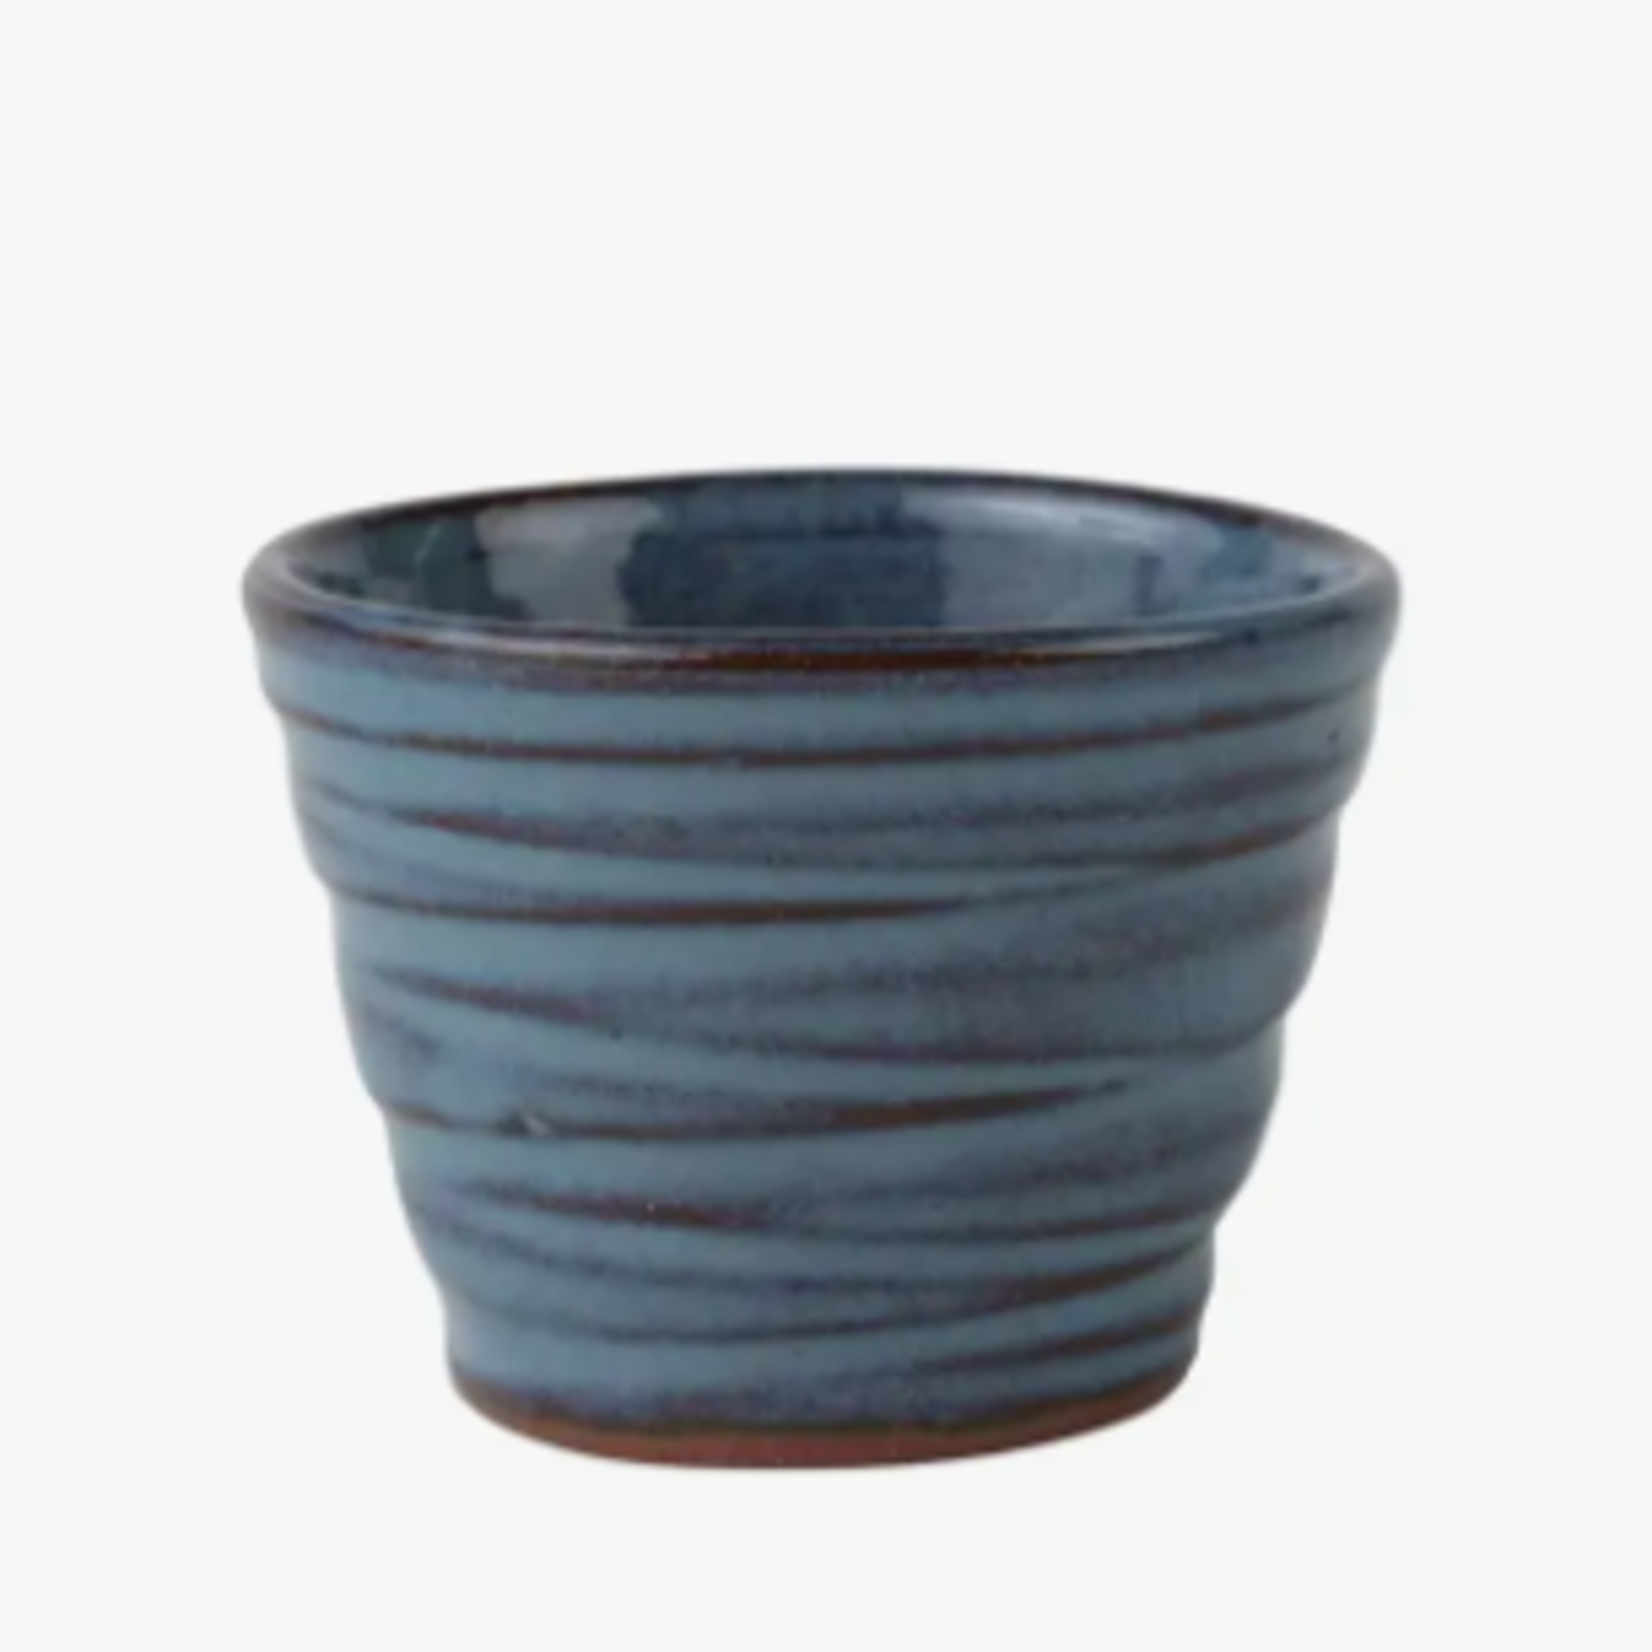 Ten Thousand Villages Sake Cup, Ceramic